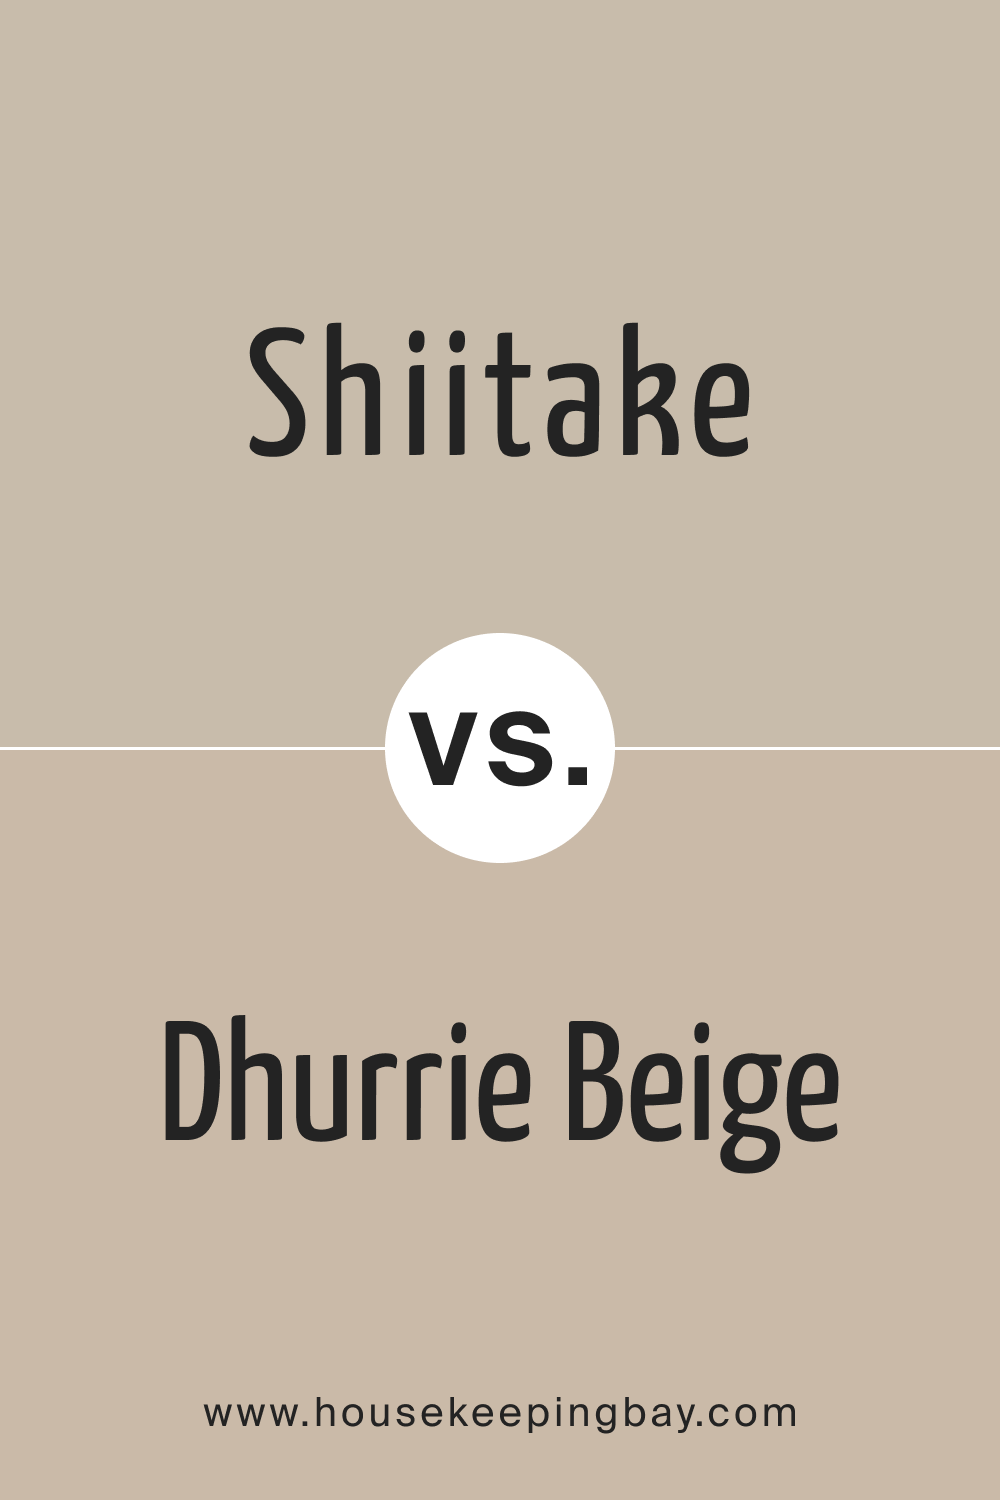 Shiitake vs. Dhurrie Beige